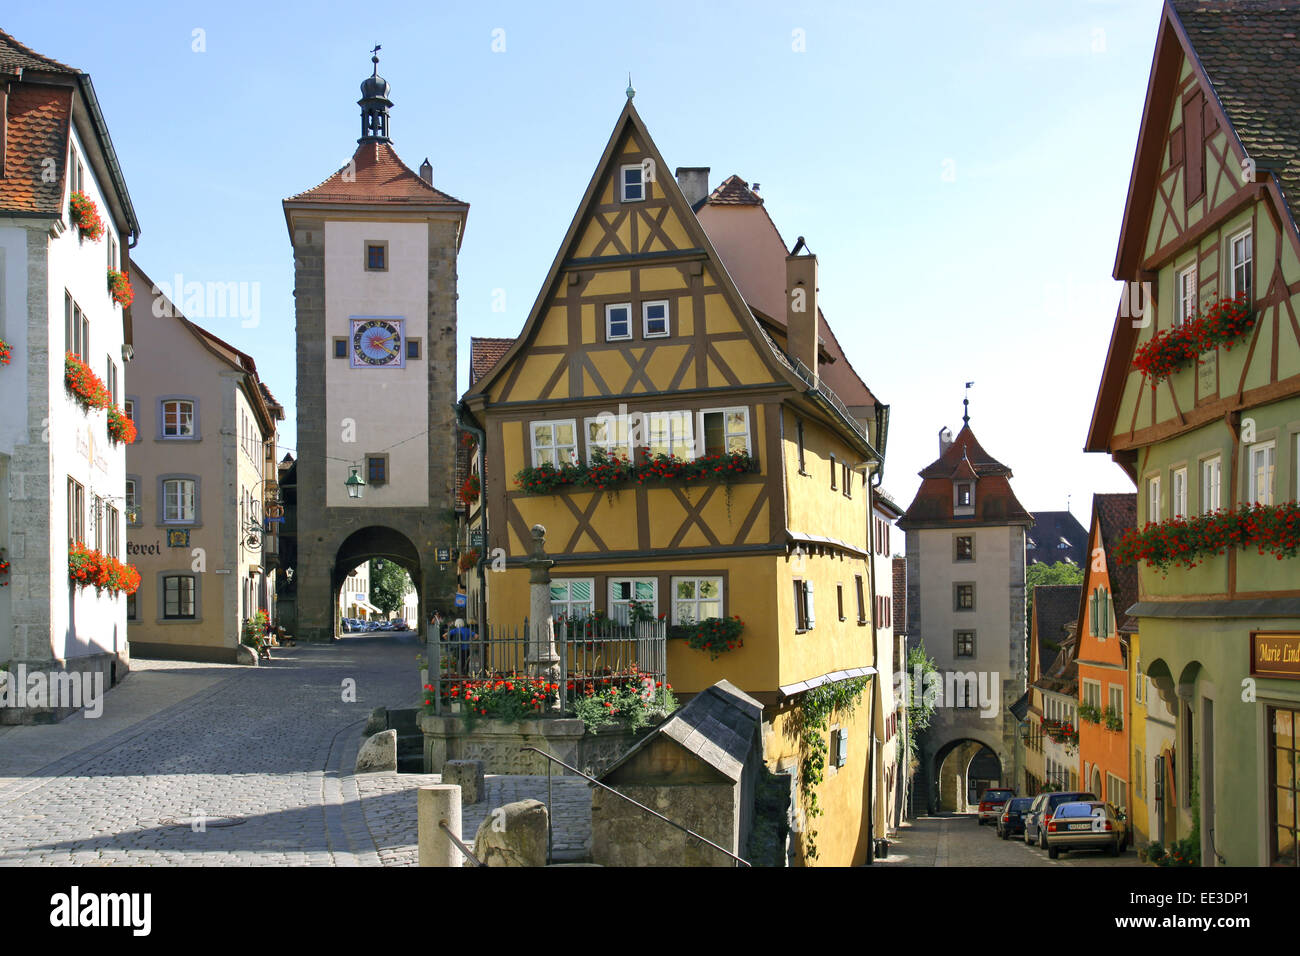 Deutschland, Bayern, Rothenburg ob der Tauber, Ploenlein, Siebersturm, 1385, Kobolzeller Tor, 1360, Architektur, Bauwerk, Bauwer Stock Photo